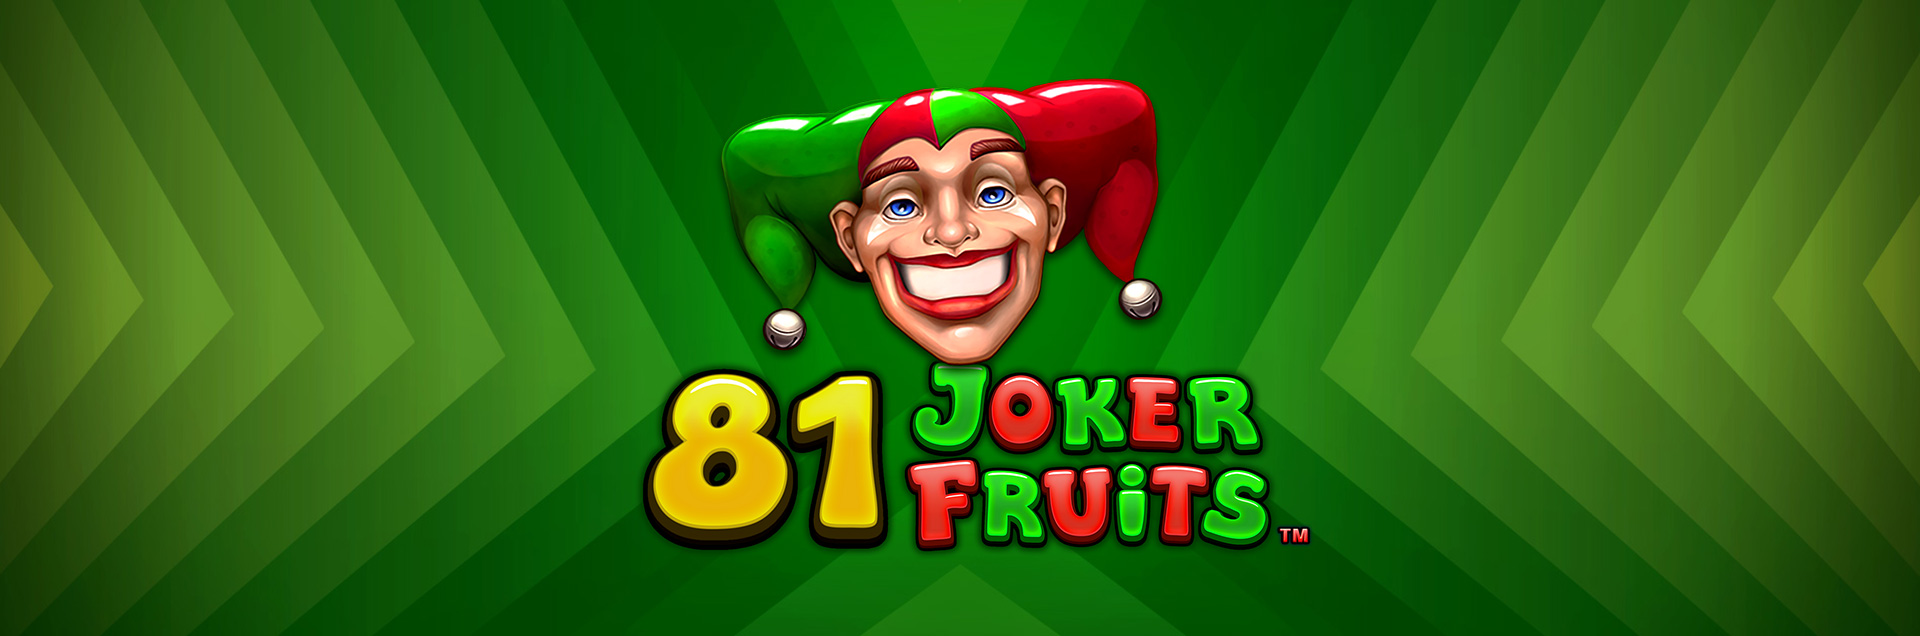 81 Joker Fruits header games